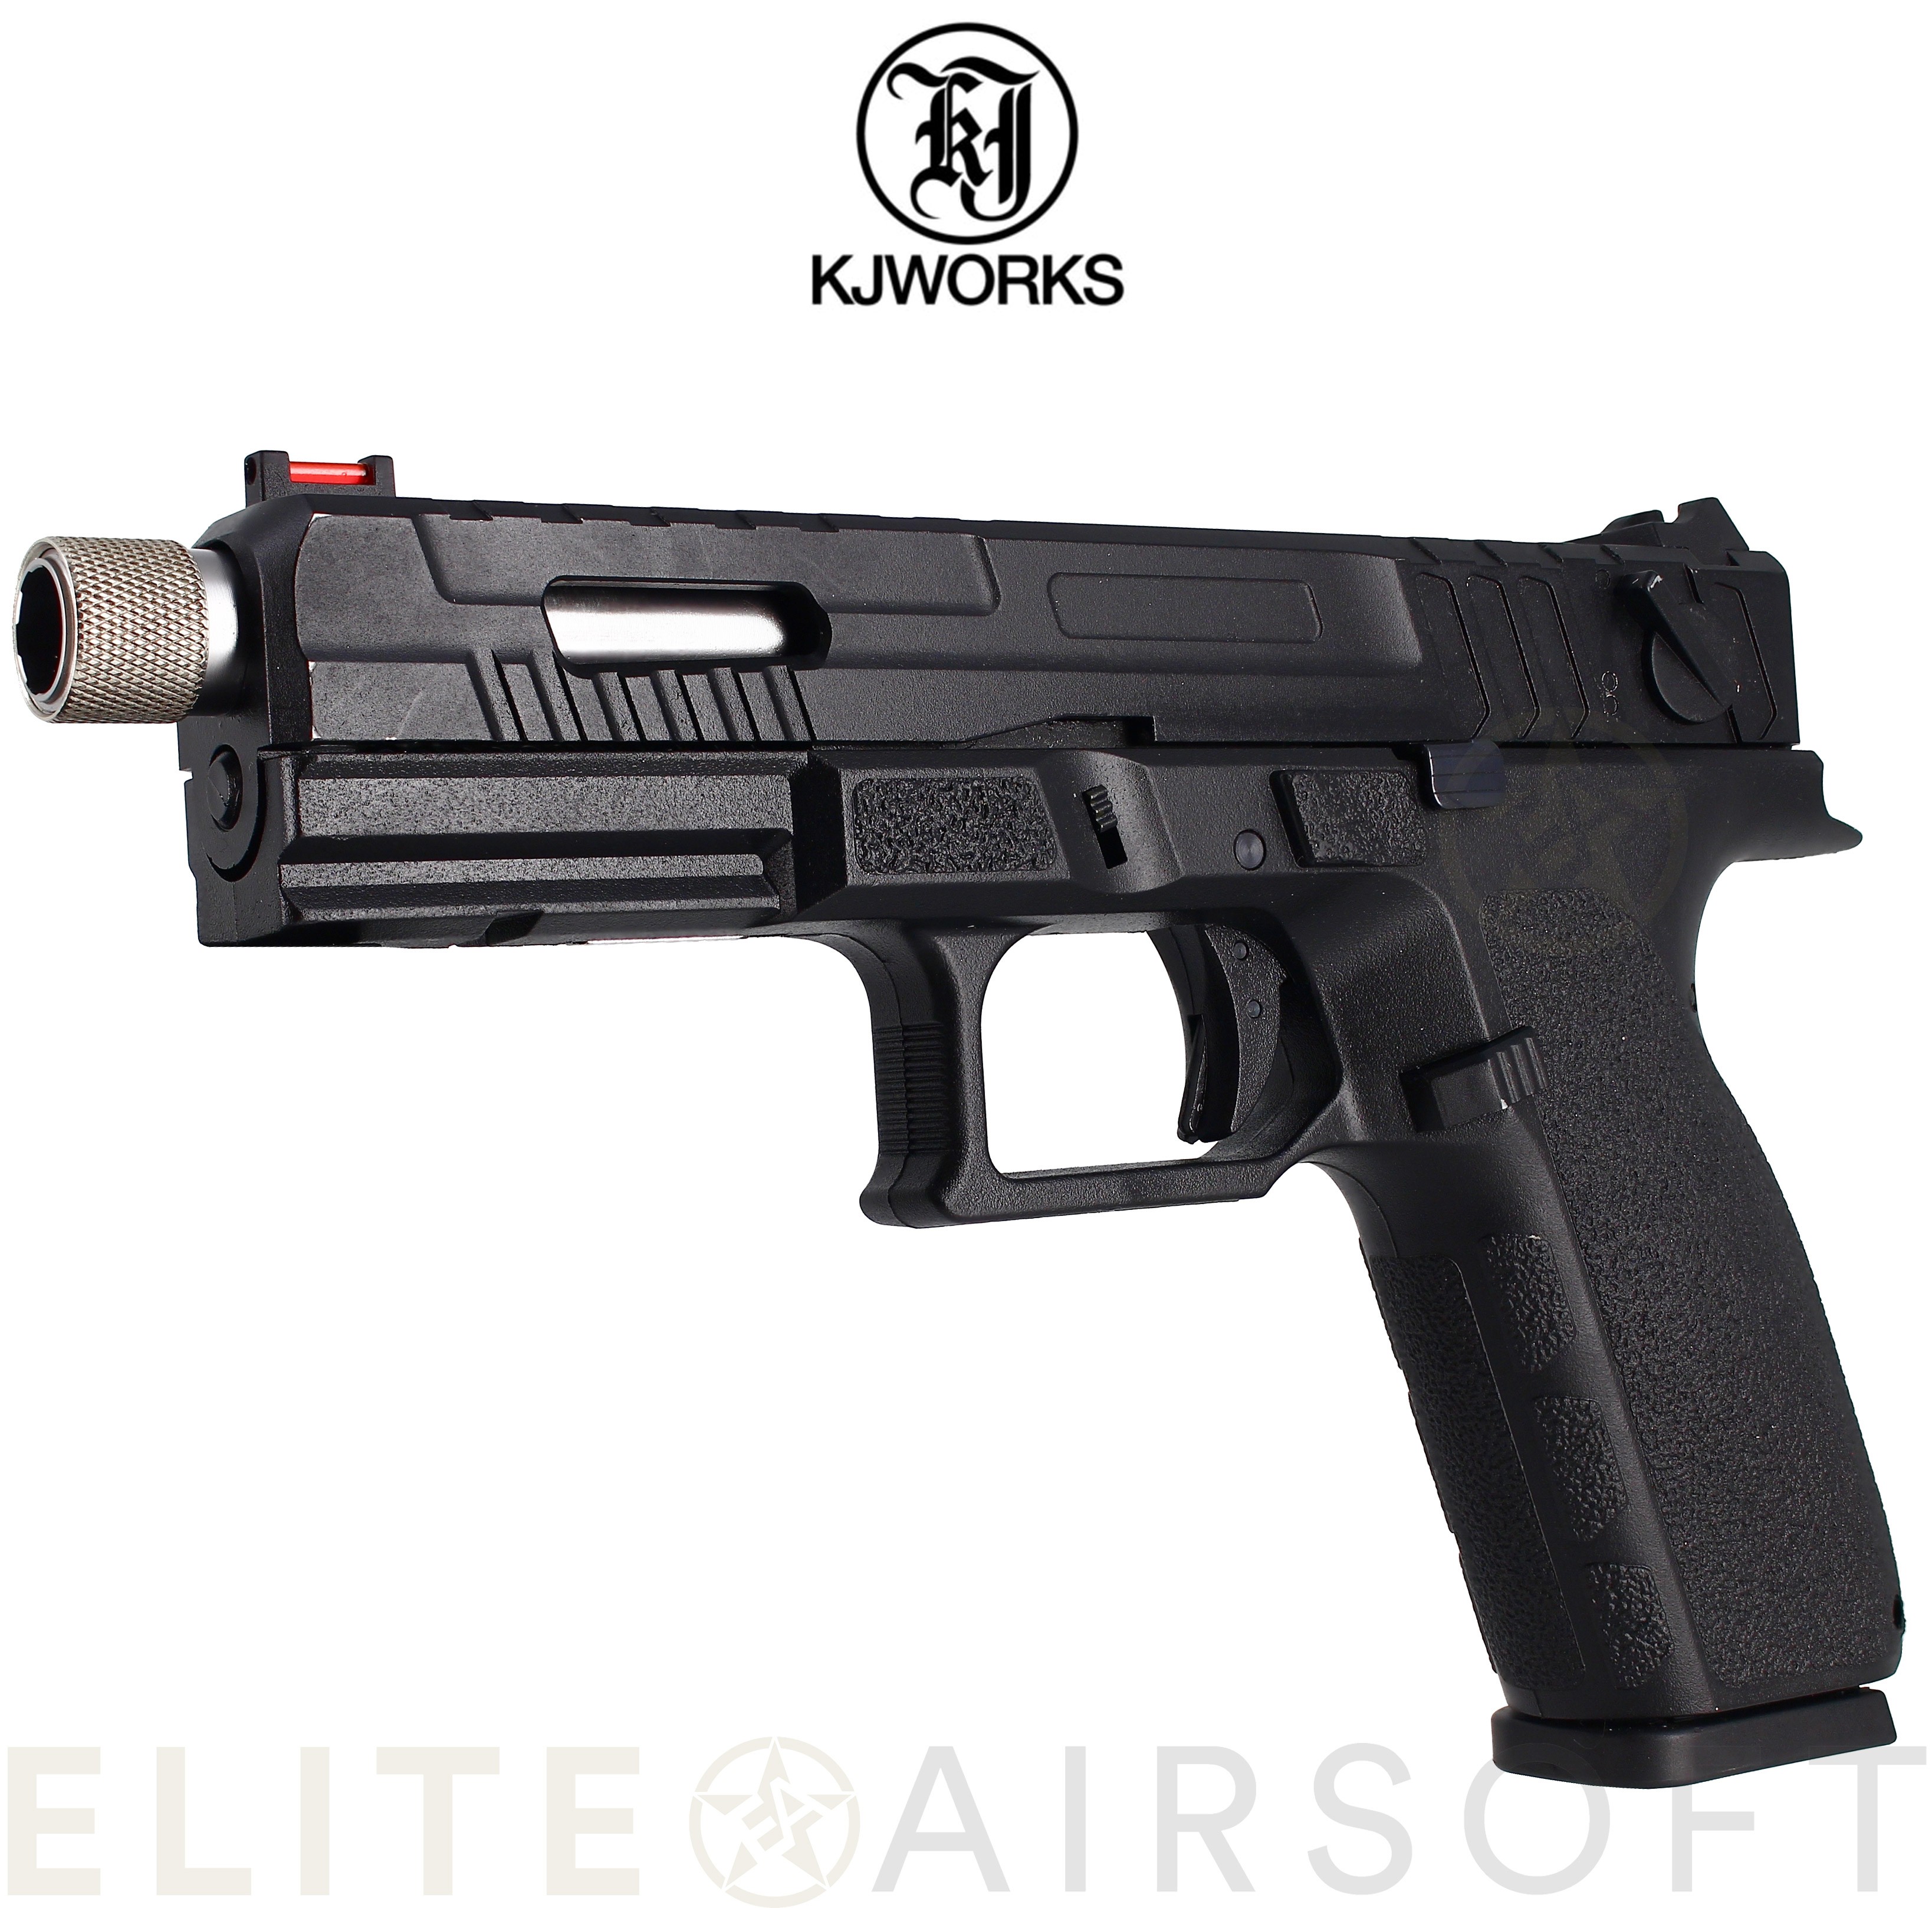 KJWorks - Pistolet KP-13 - Gaz - Noir (1 Joule) - Elite Airsoft